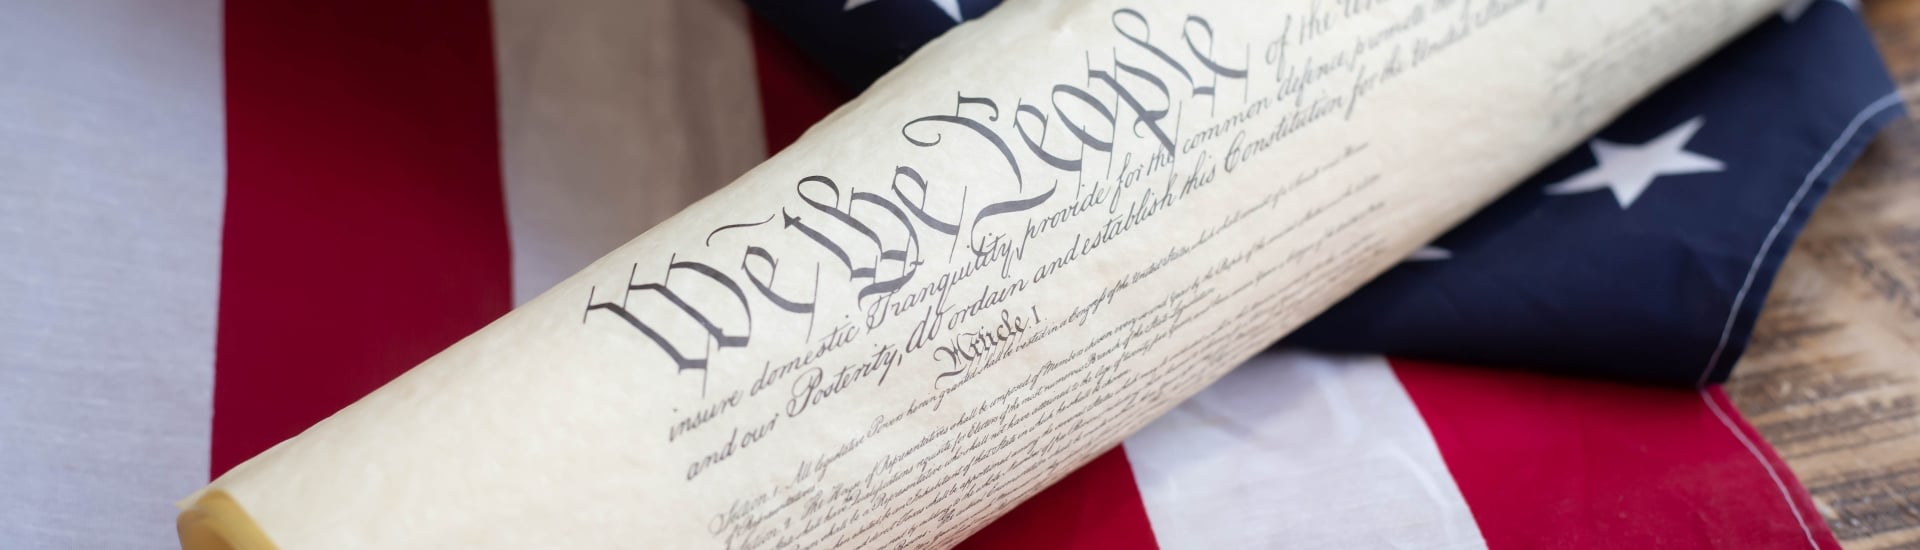 Décima enmienda de la Constitución de Estados Unidos y el gobierno federal